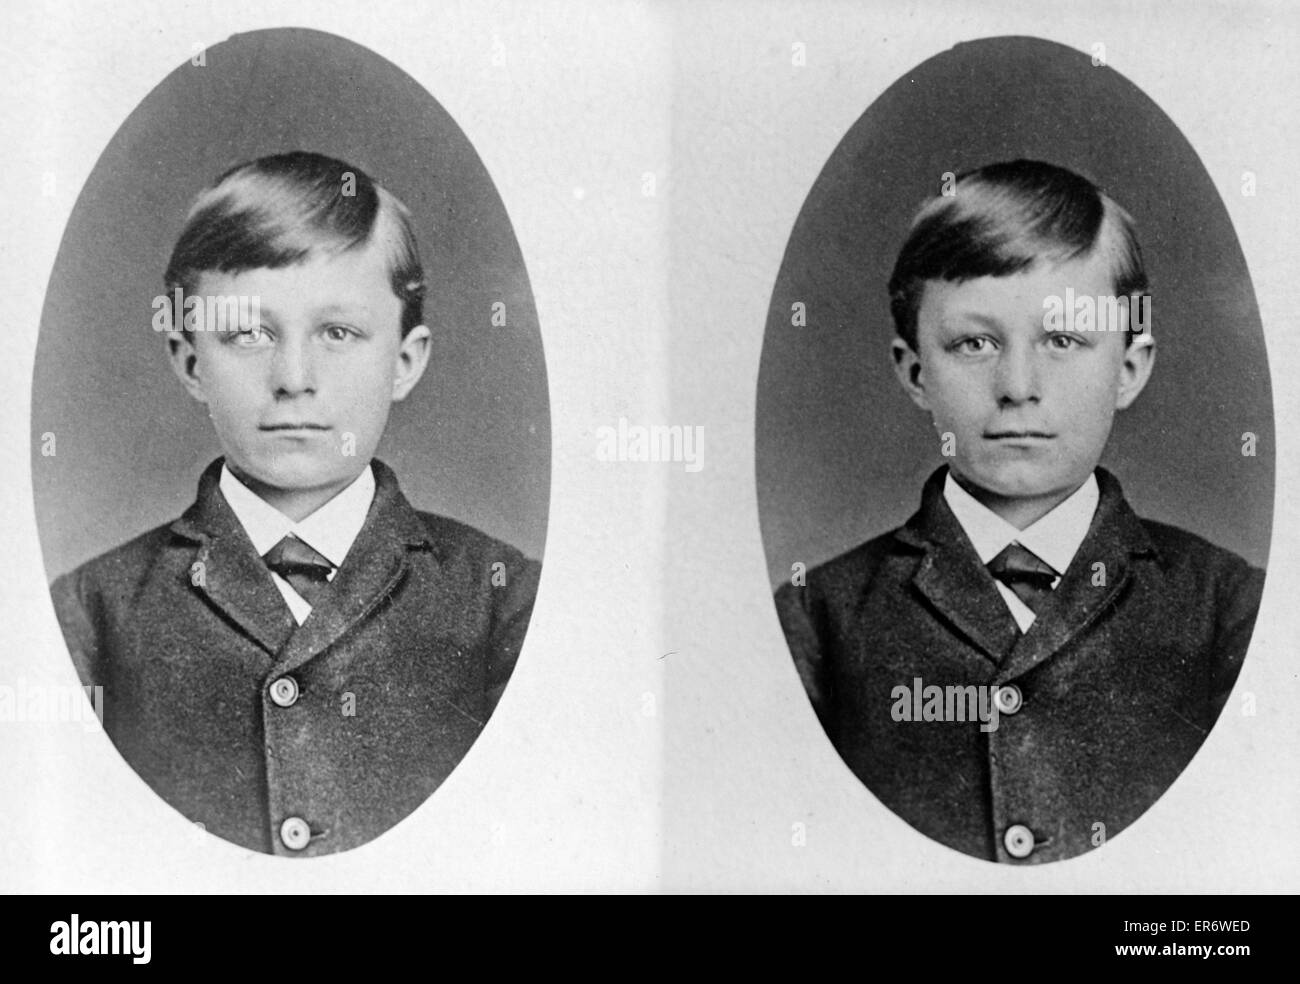 Kindheit-Porträt von Wilbur Wright. Datum zwischen 1901 und 1928. Stockfoto